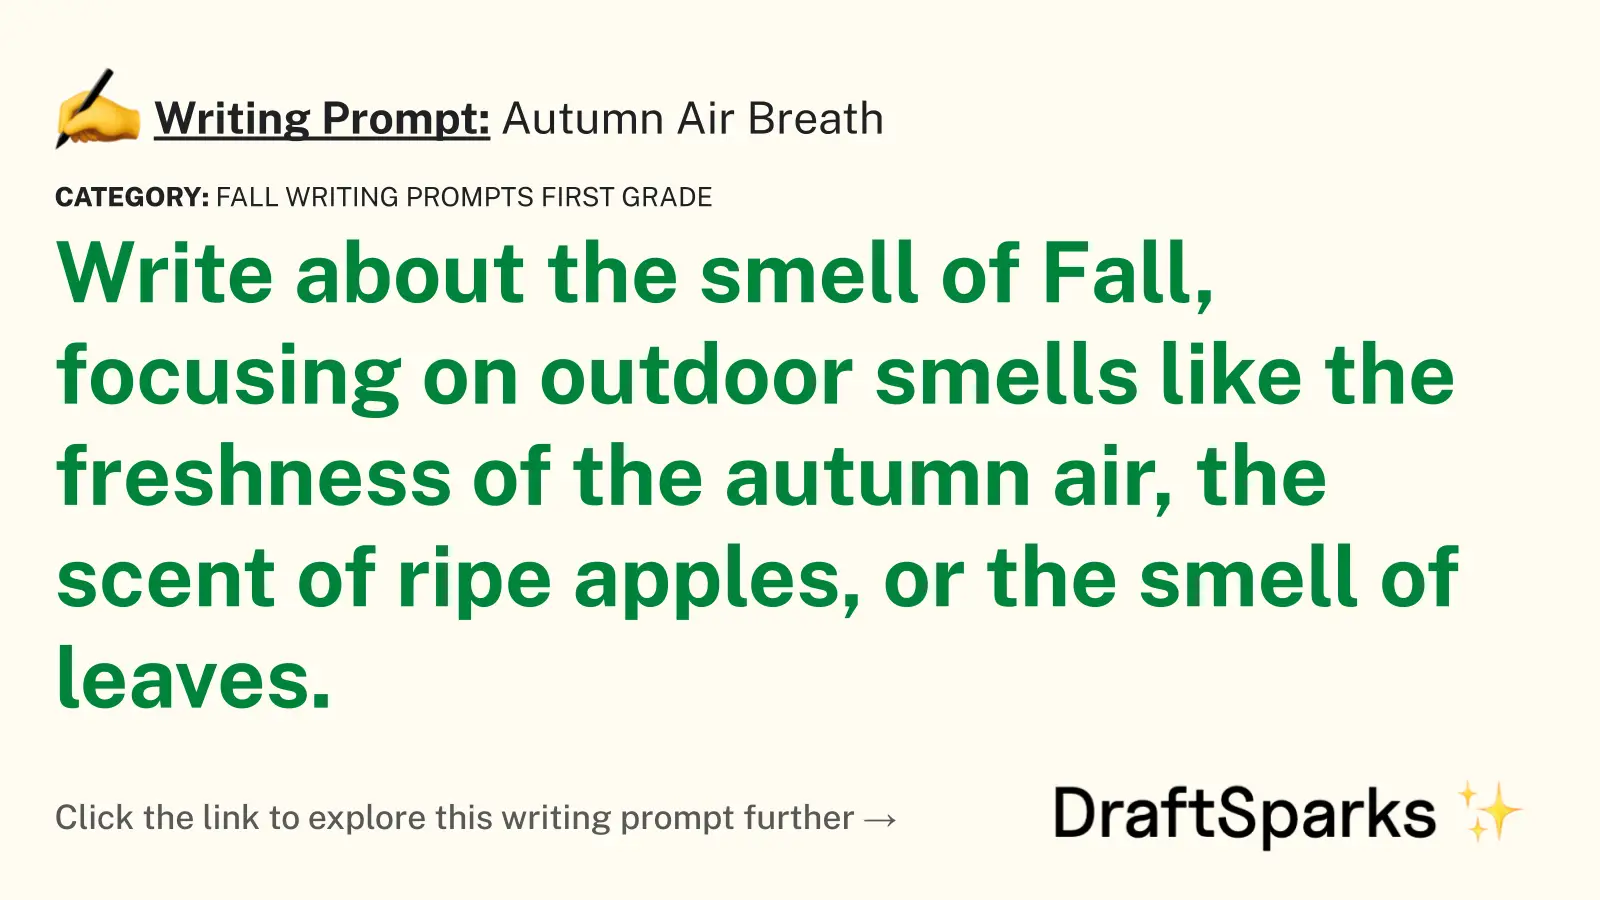 Autumn Air Breath